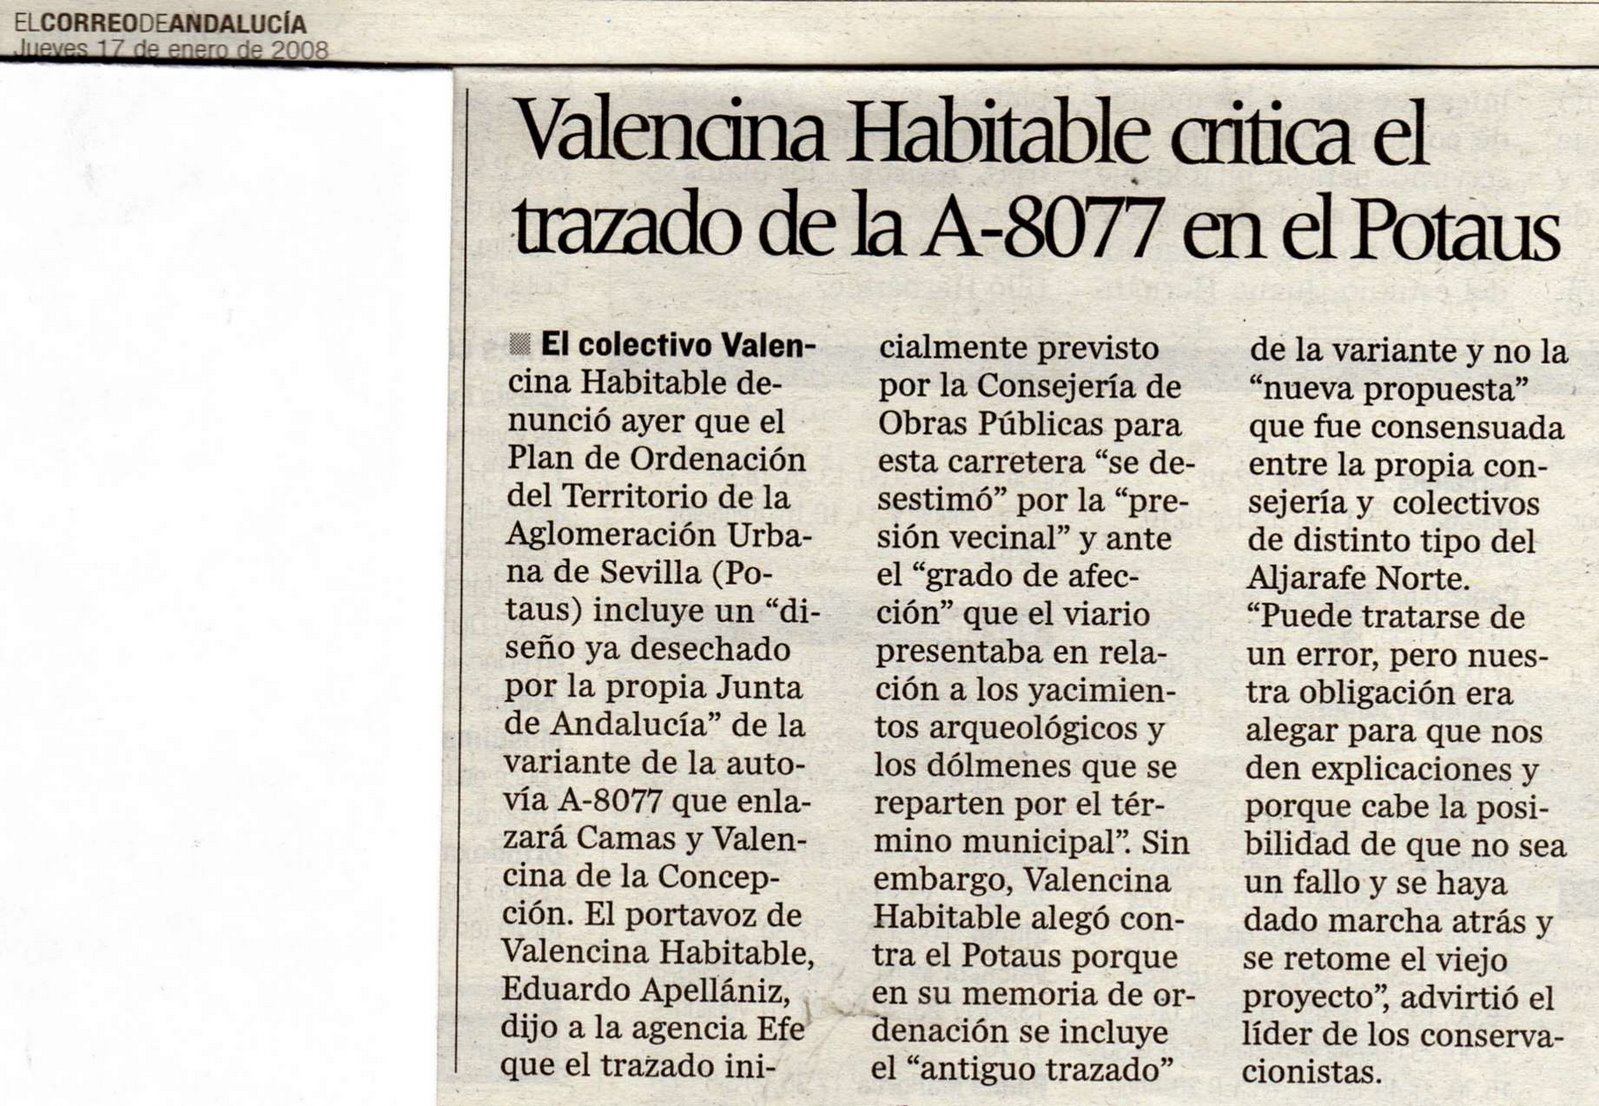 [2008+01+17+CORREO+ANDALUCÃ A+VALENCINA+HABITABLE+CRITICA+EL+TRAZADO+DE+LA+A-8077+EN+EL+POTAUS.jpg]